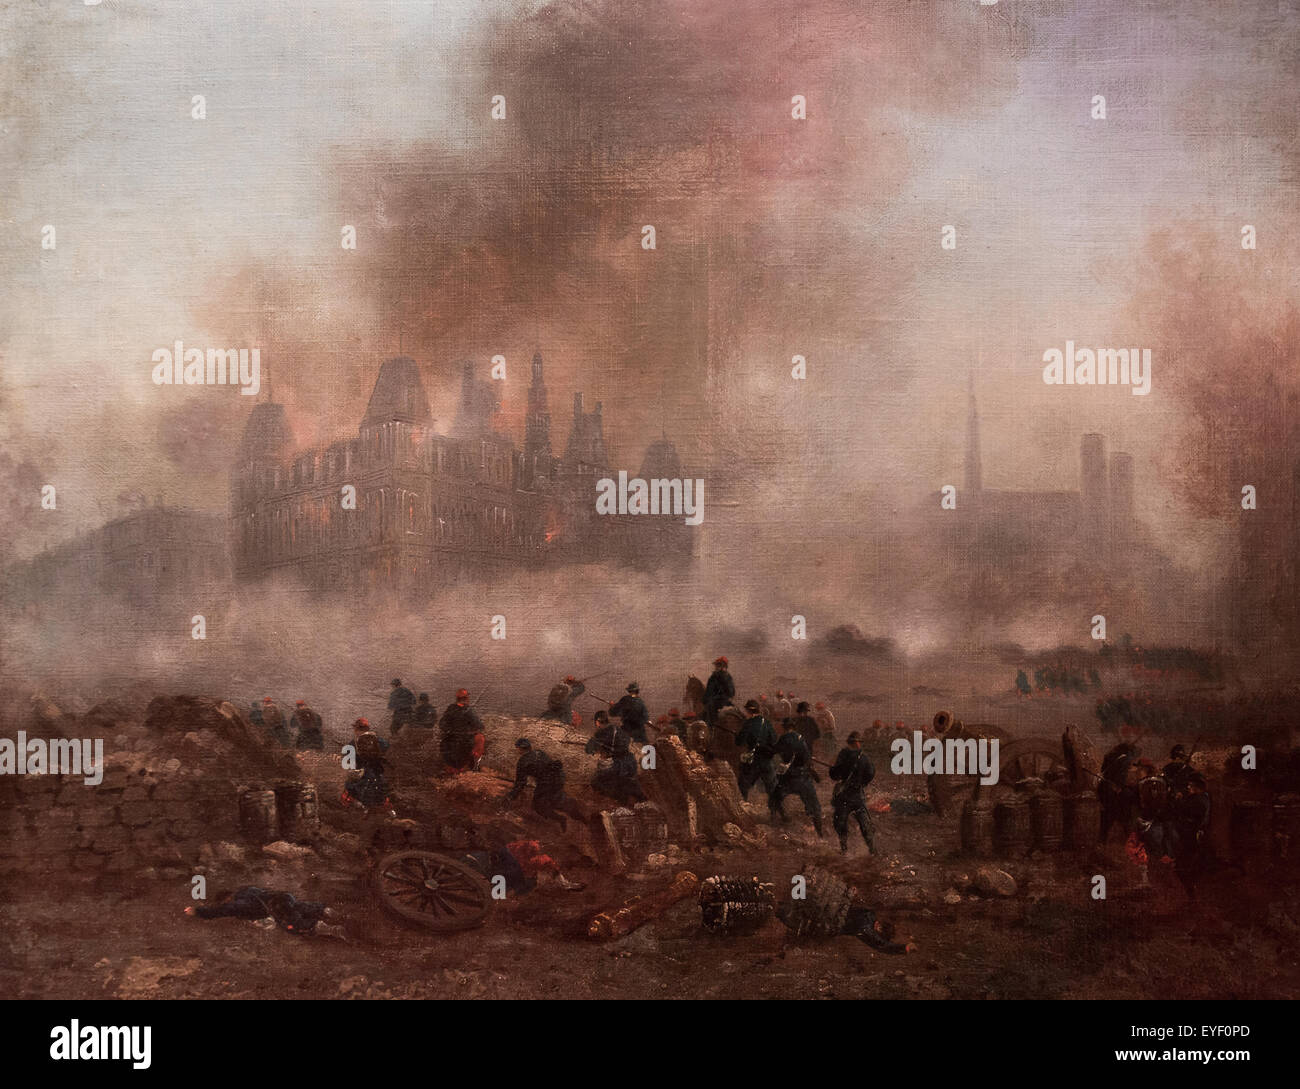 Los despedidos del ayuntamiento, ataque de tropas Versaillais, de mayo de 1871 17/10/2013 - Colección del siglo XIX. Foto de stock